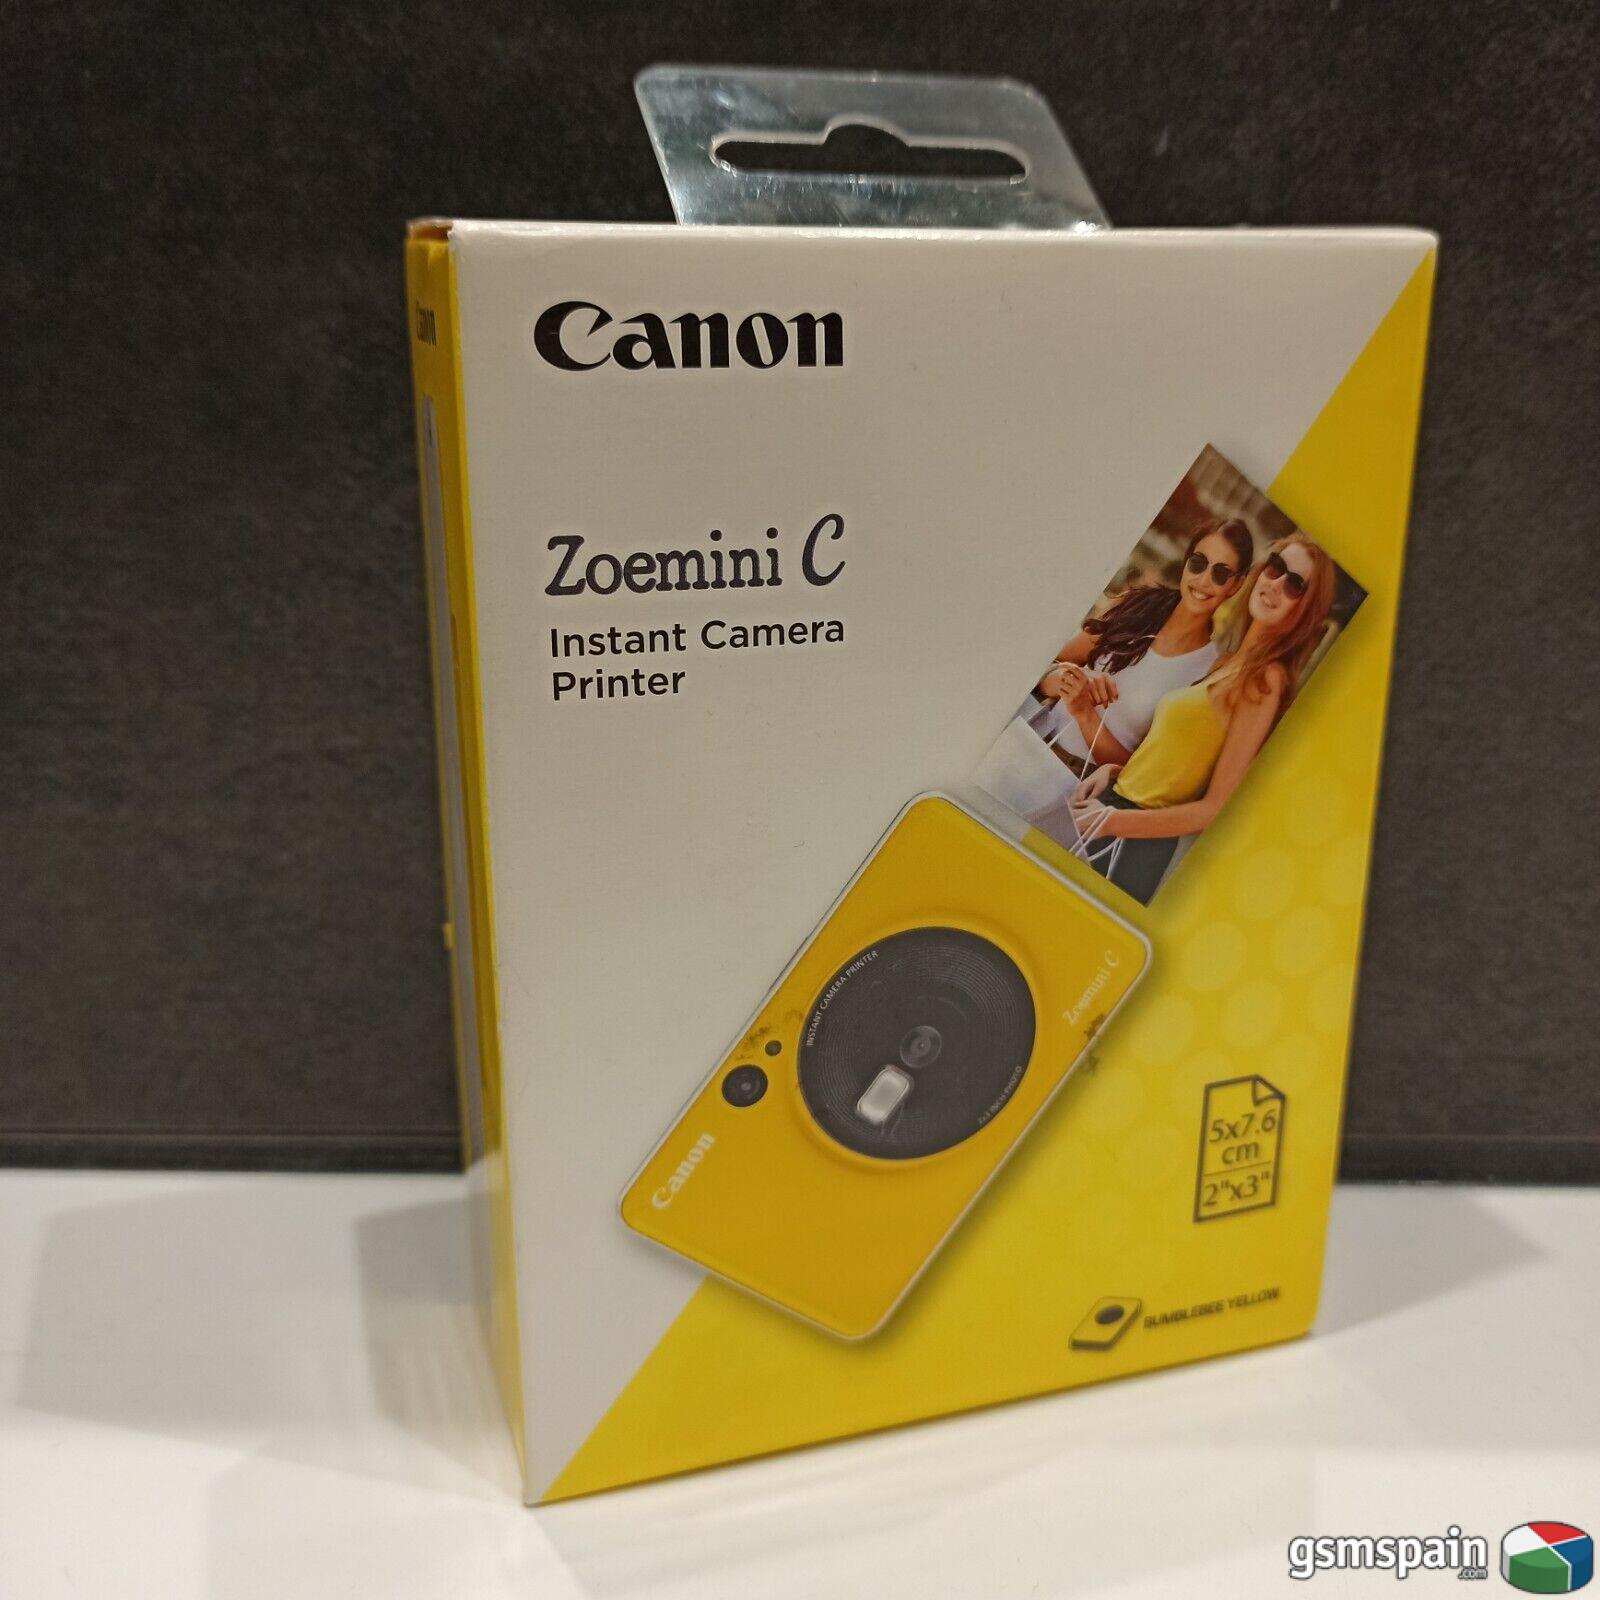 [VENDO] Cmara Instantnea - Canon Zoemini C - Color Amarillo NUEVA